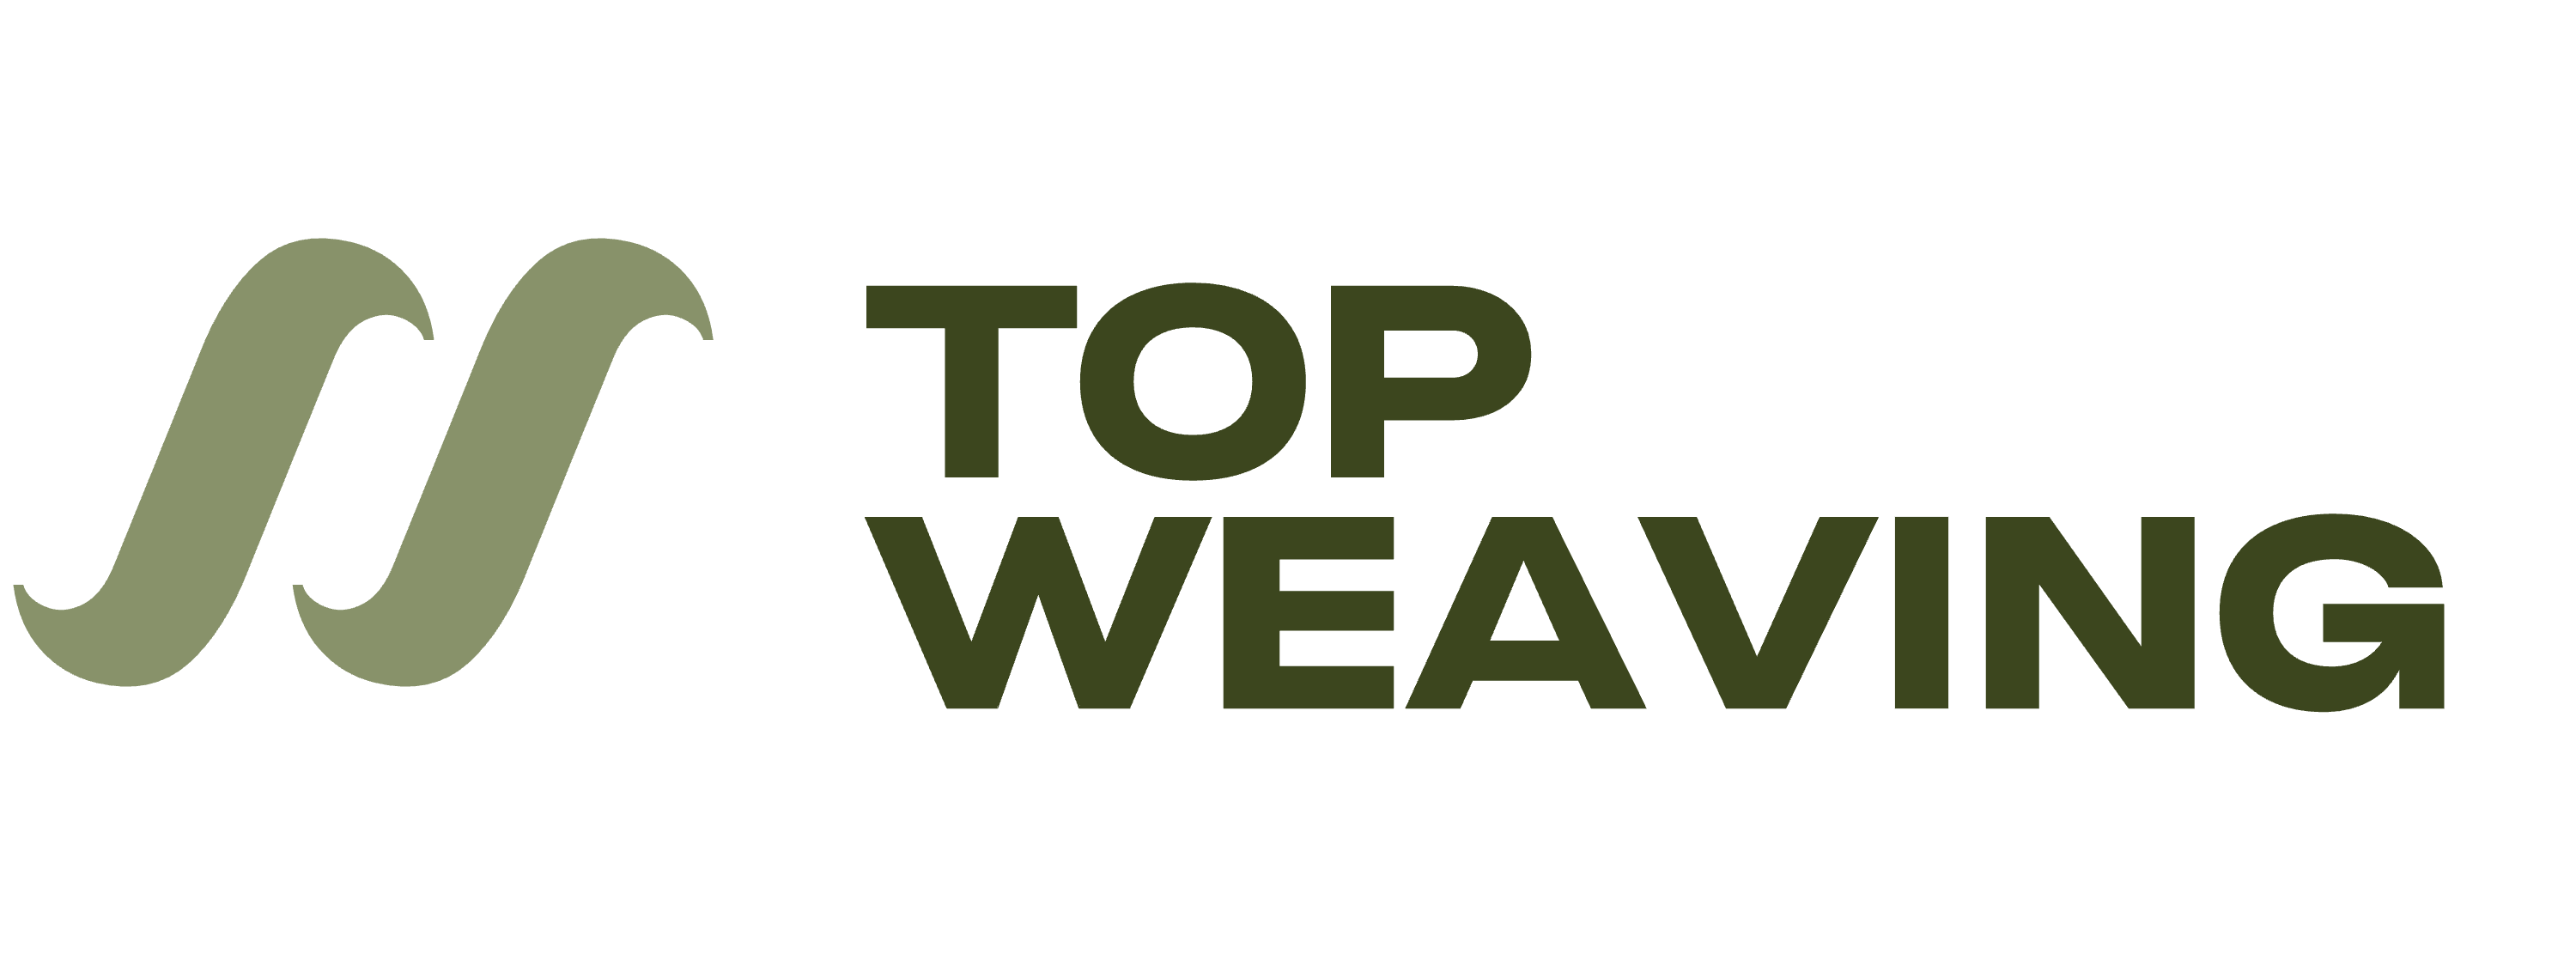 Top Weaving